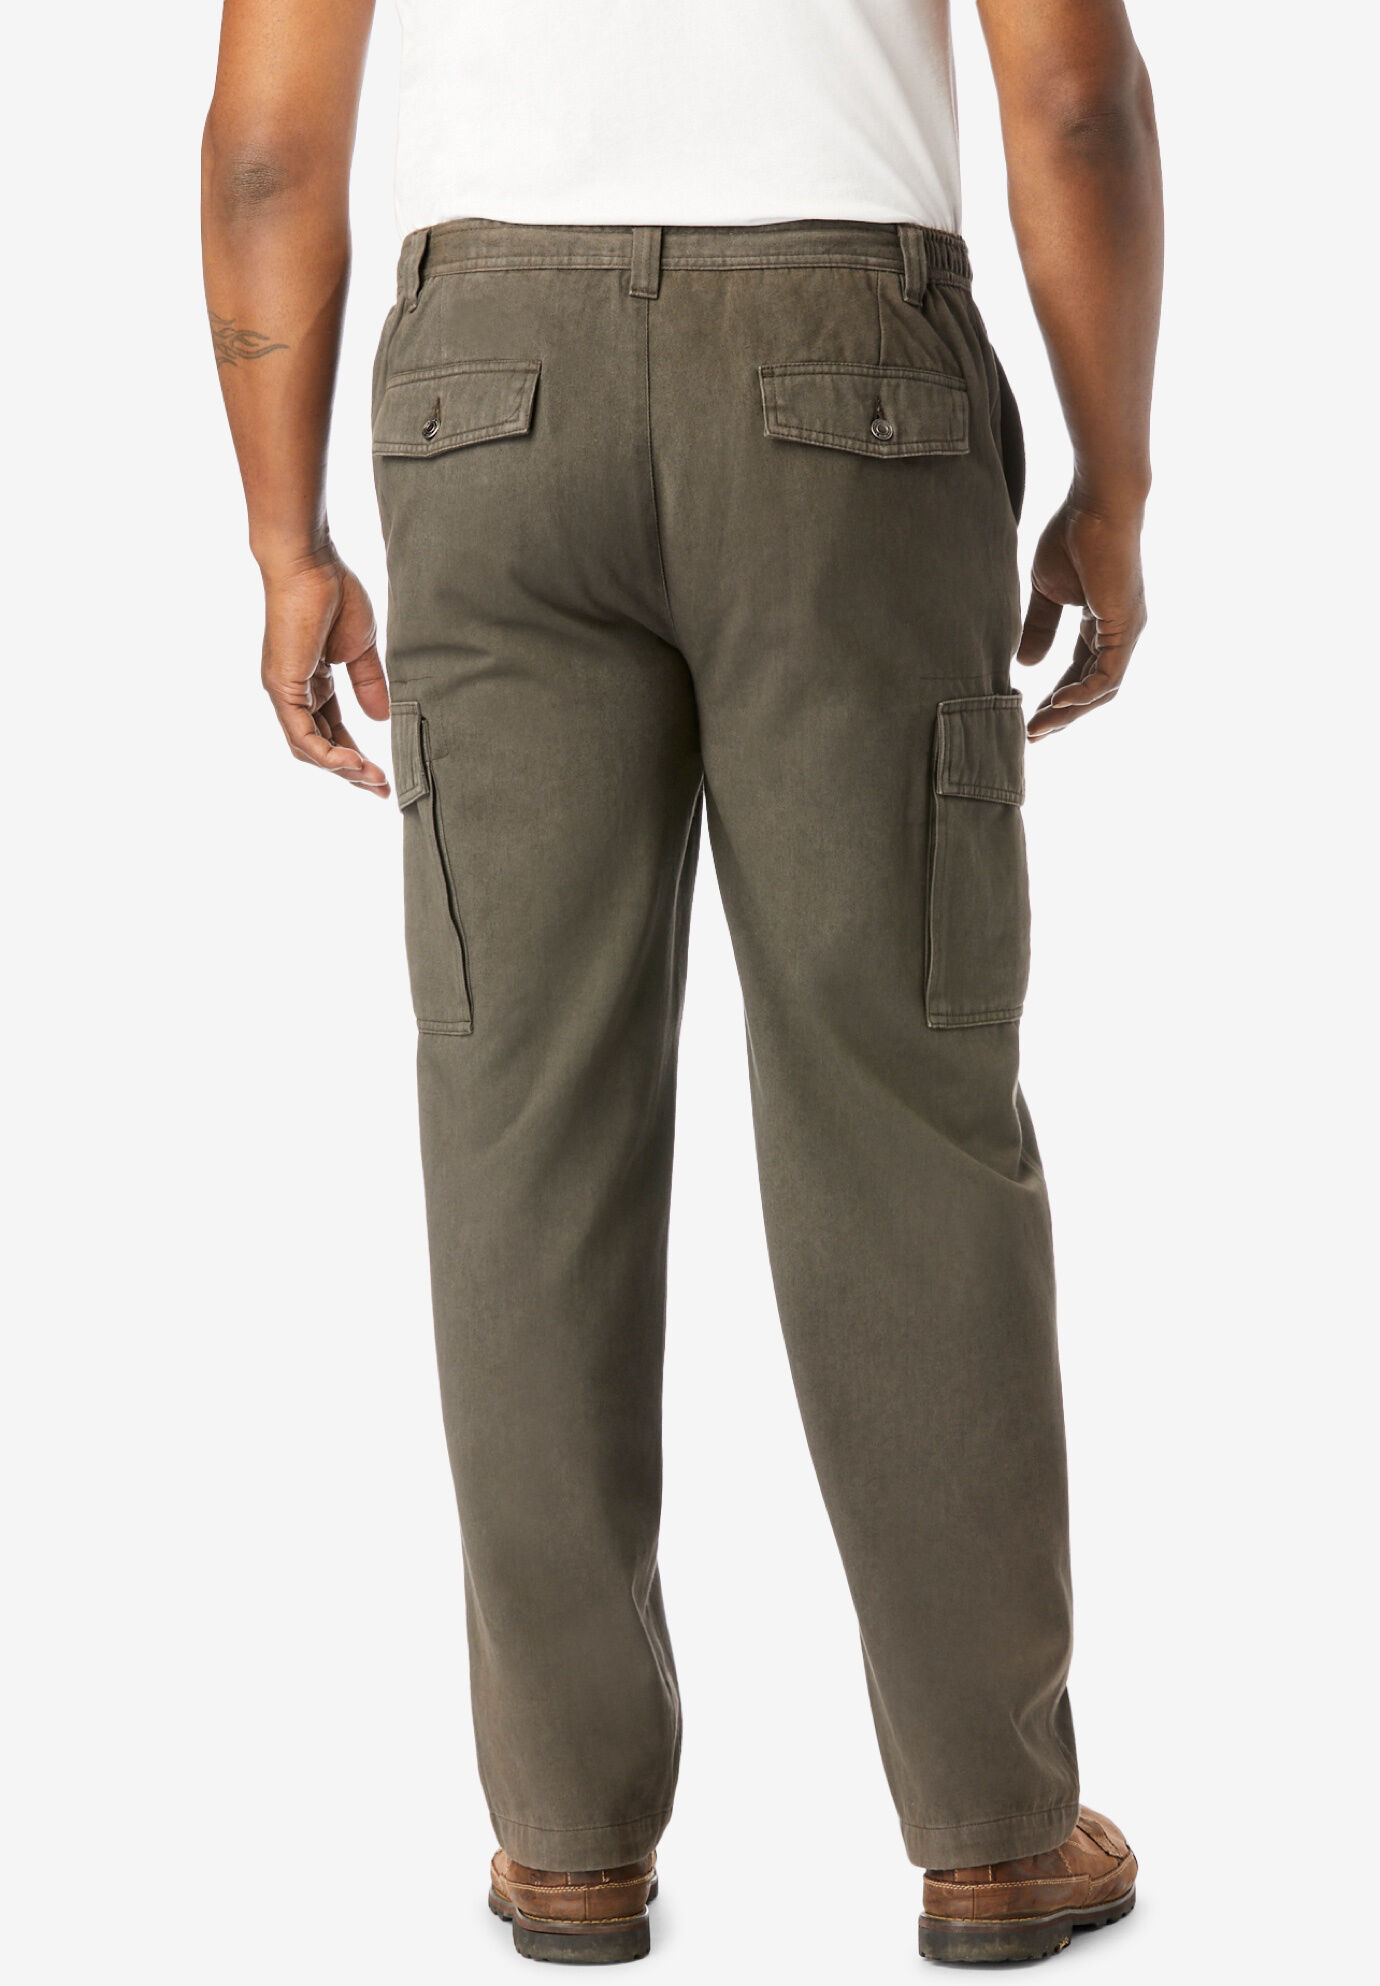 big men's cargo pants elastic waist